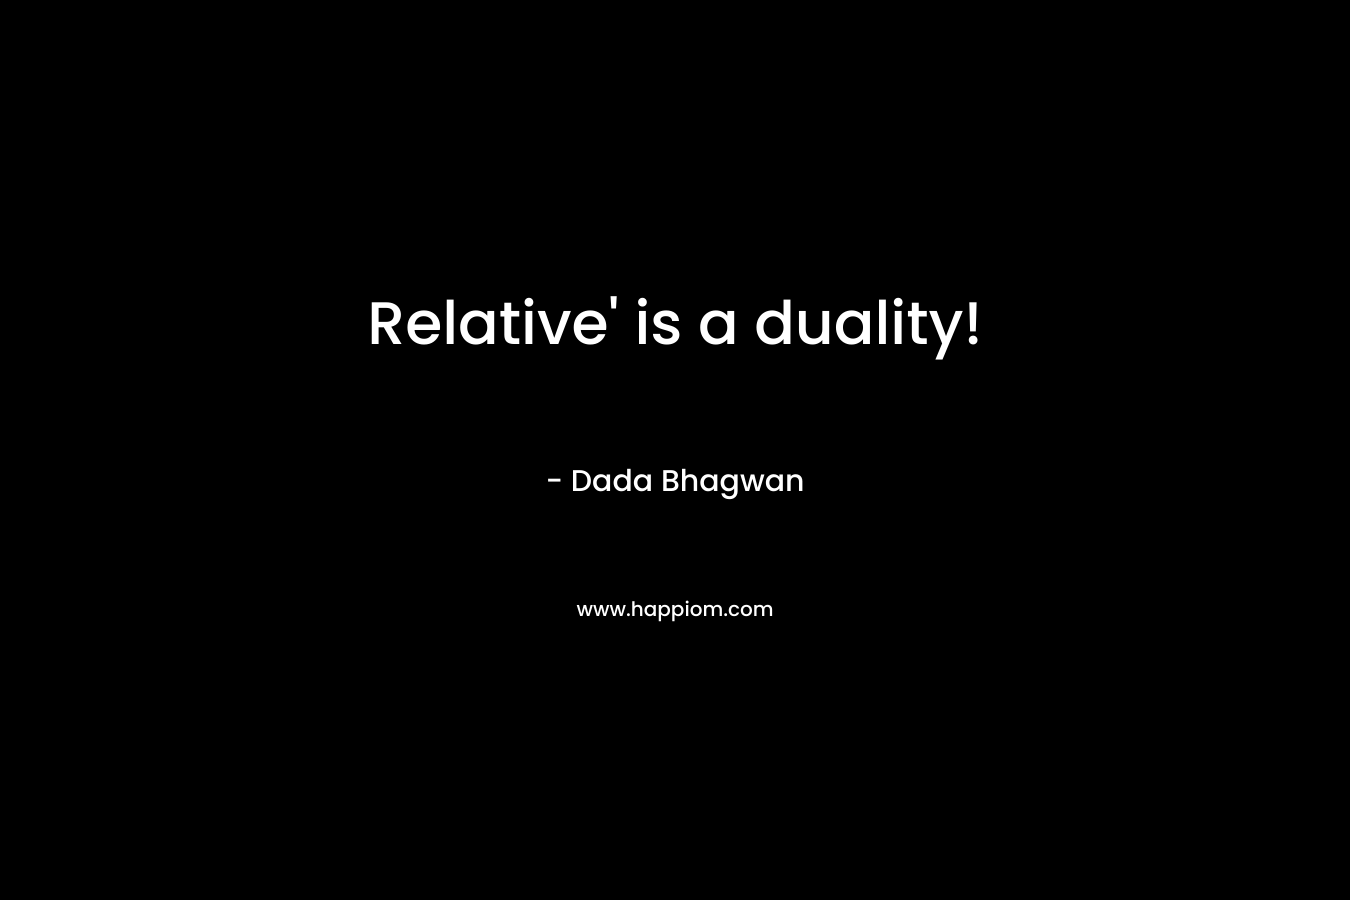 Relative’ is a duality! – Dada Bhagwan